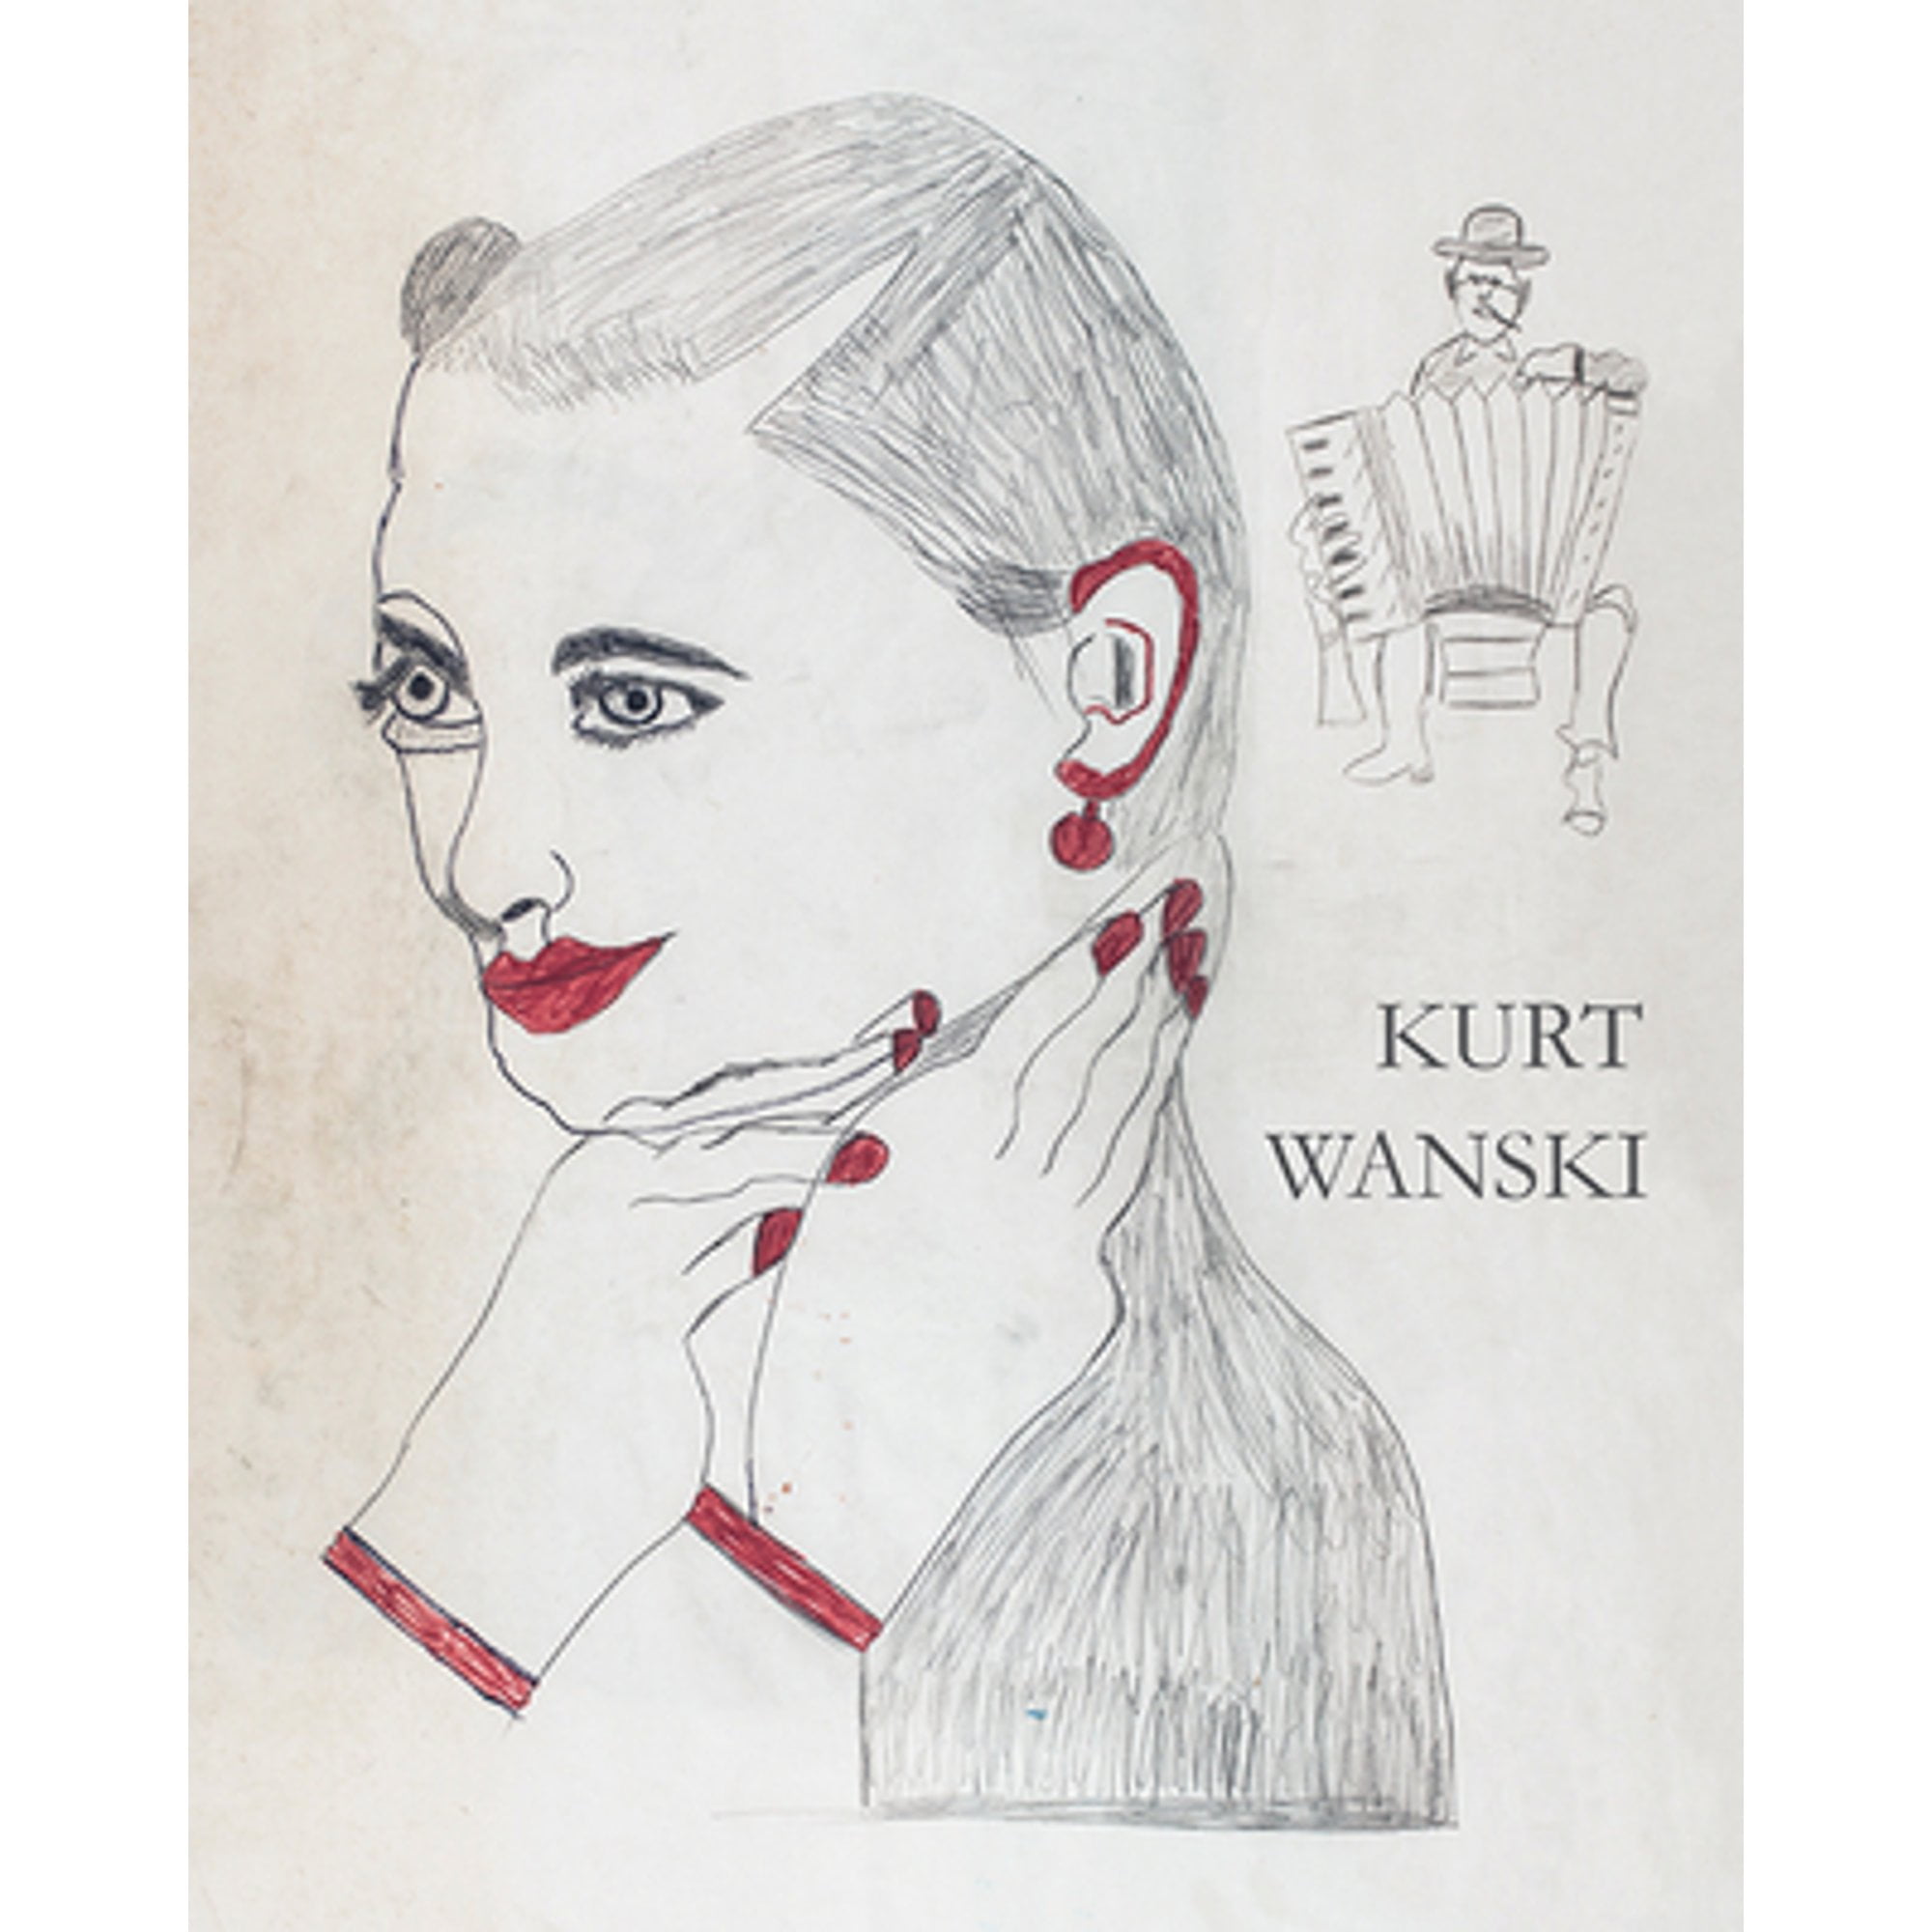 Pre-Owned Kurt Wanski (Hardcover 9783862067411) by Jurgen Kohler